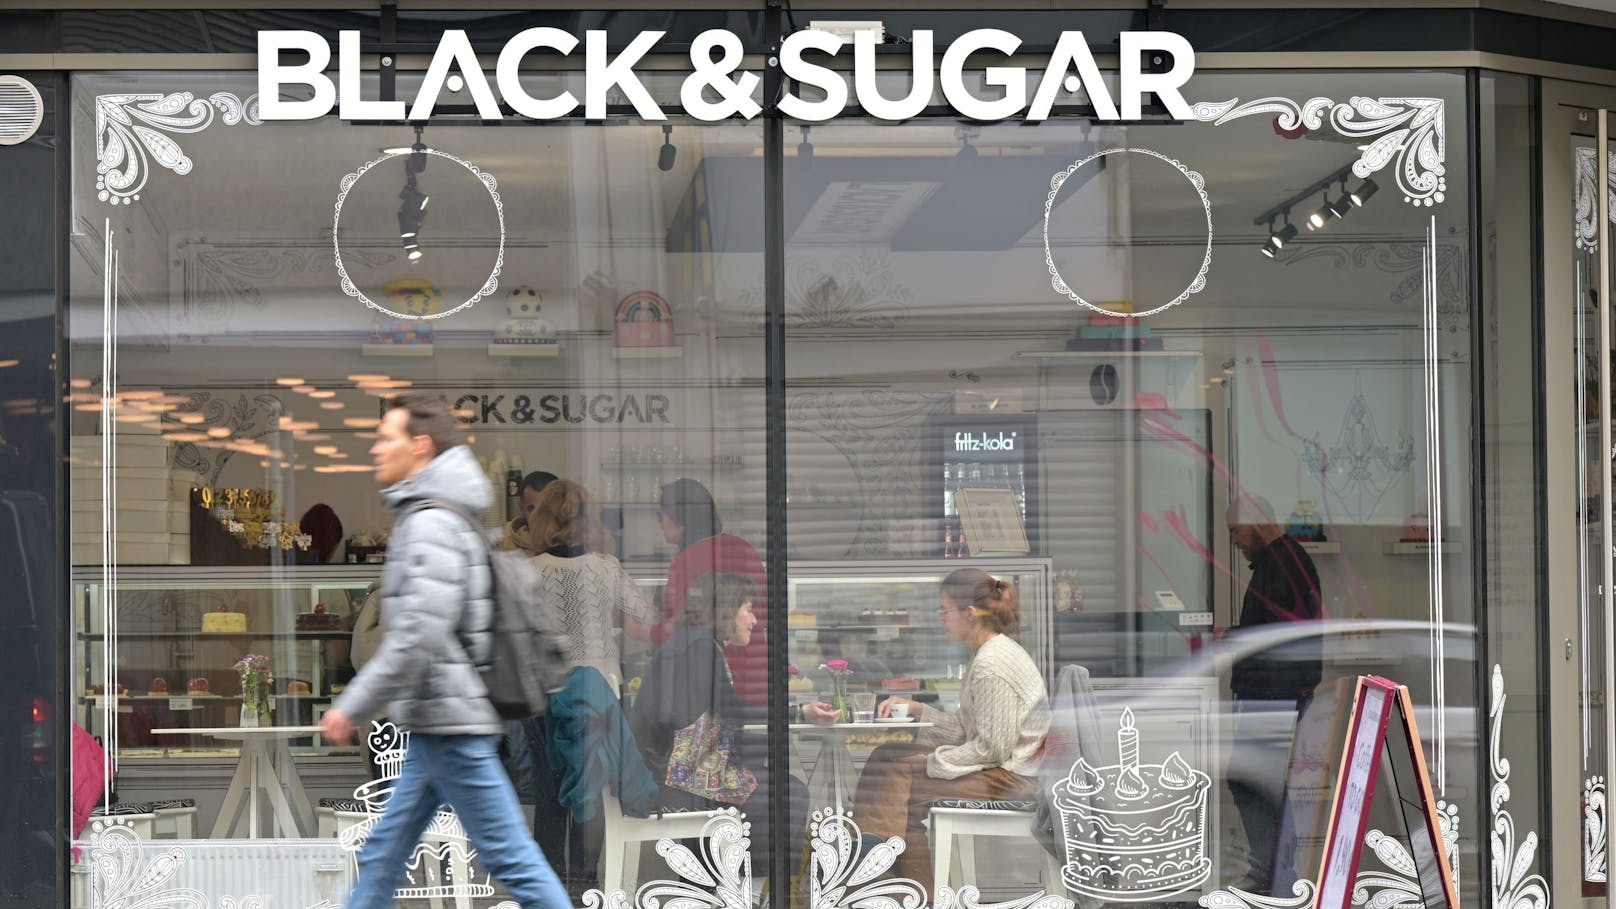 "Black & Sugar" – diese Konditorei gibt sich zuckerfrei